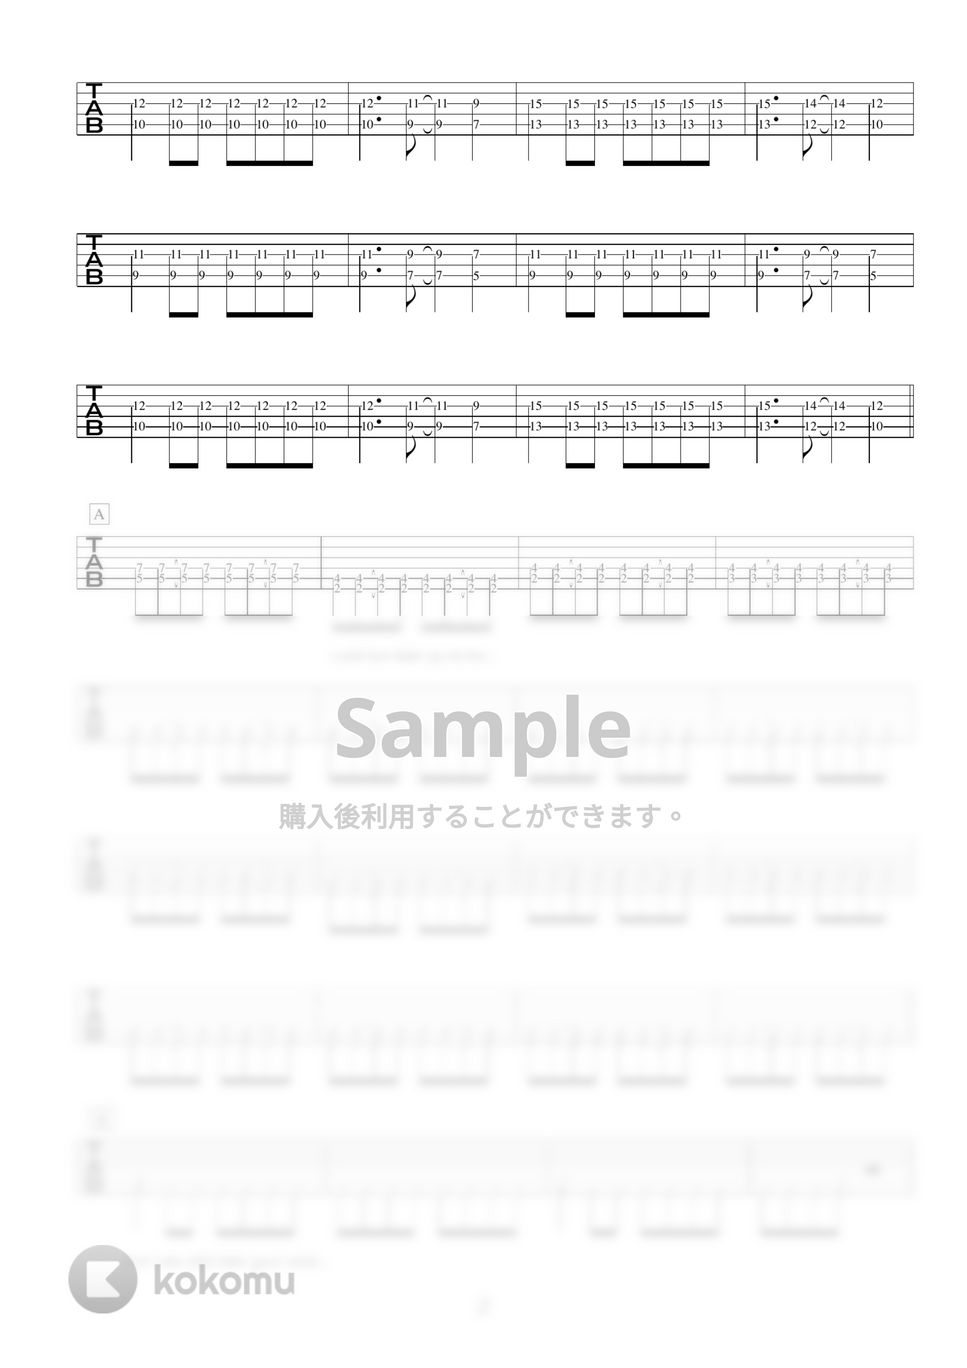 ken yokoyama - ken yokoyama人気曲3セット ギター演奏動画付TAB譜 by バイトーン音楽教室